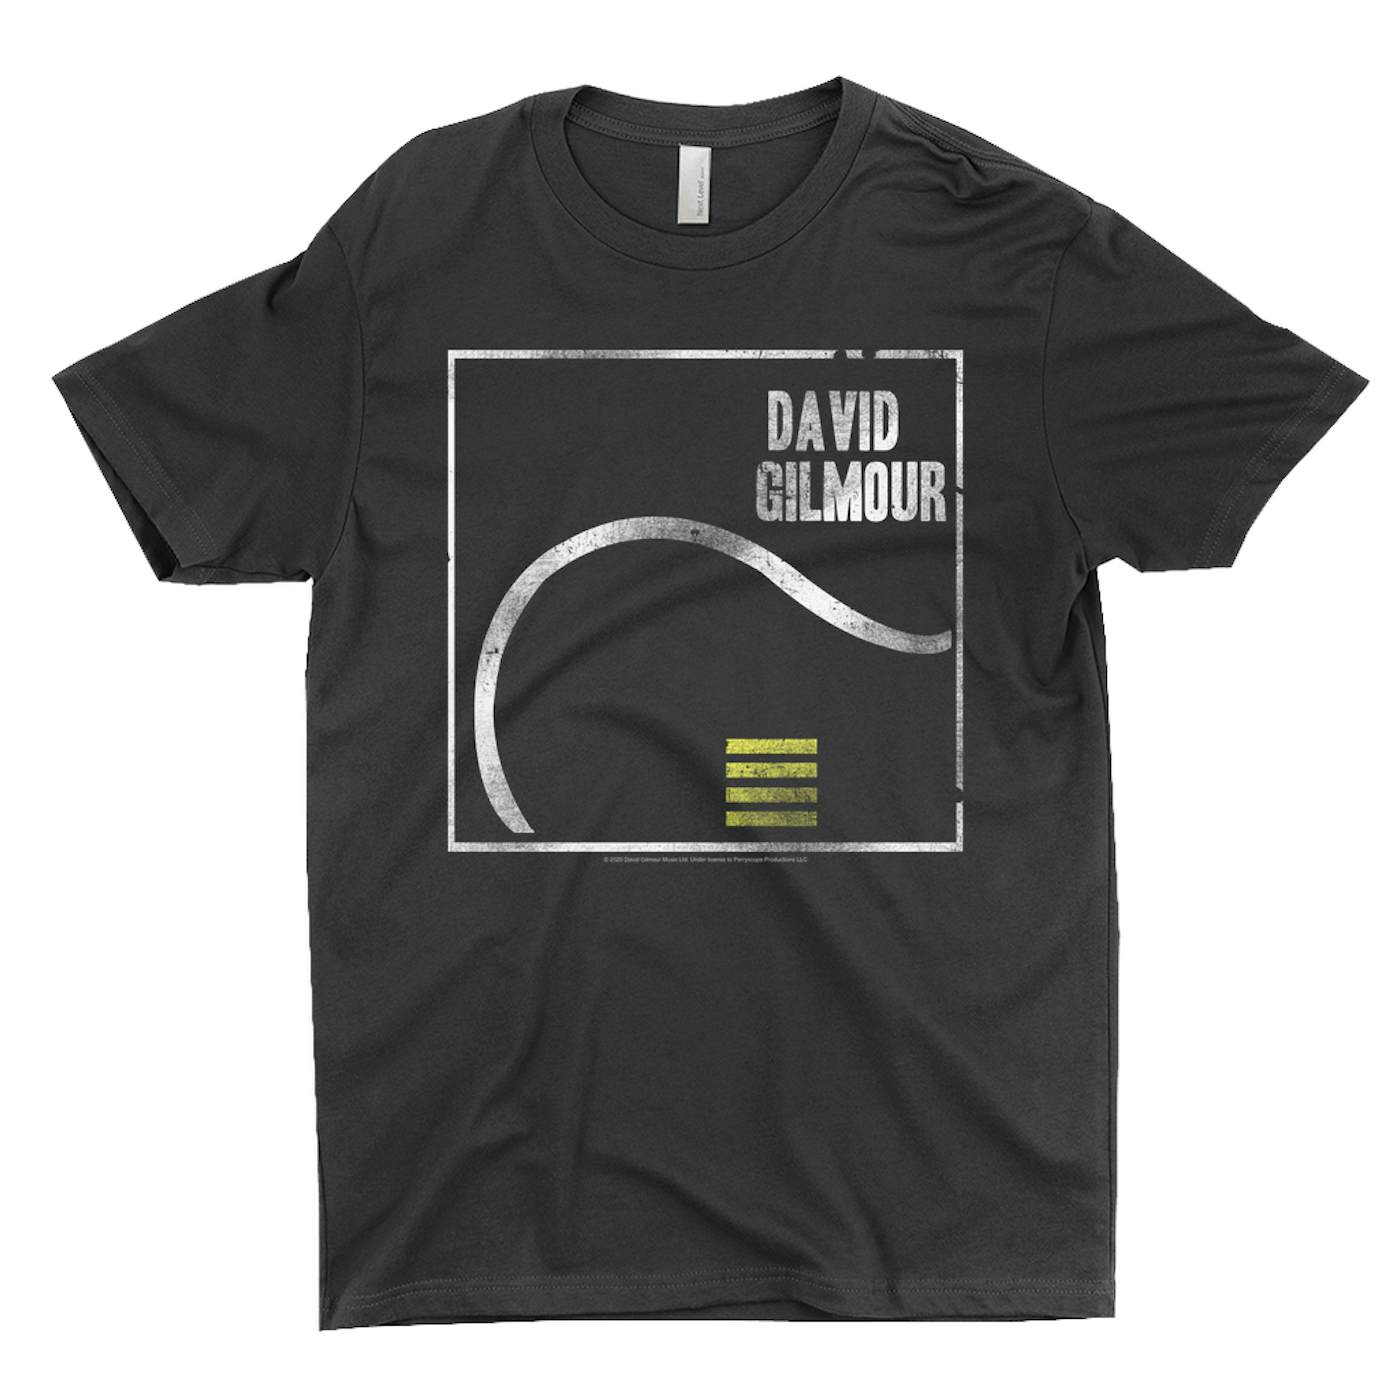 David Gilmour T-Shirt | David Gilmour Design Distressed David Gilmour Shirt